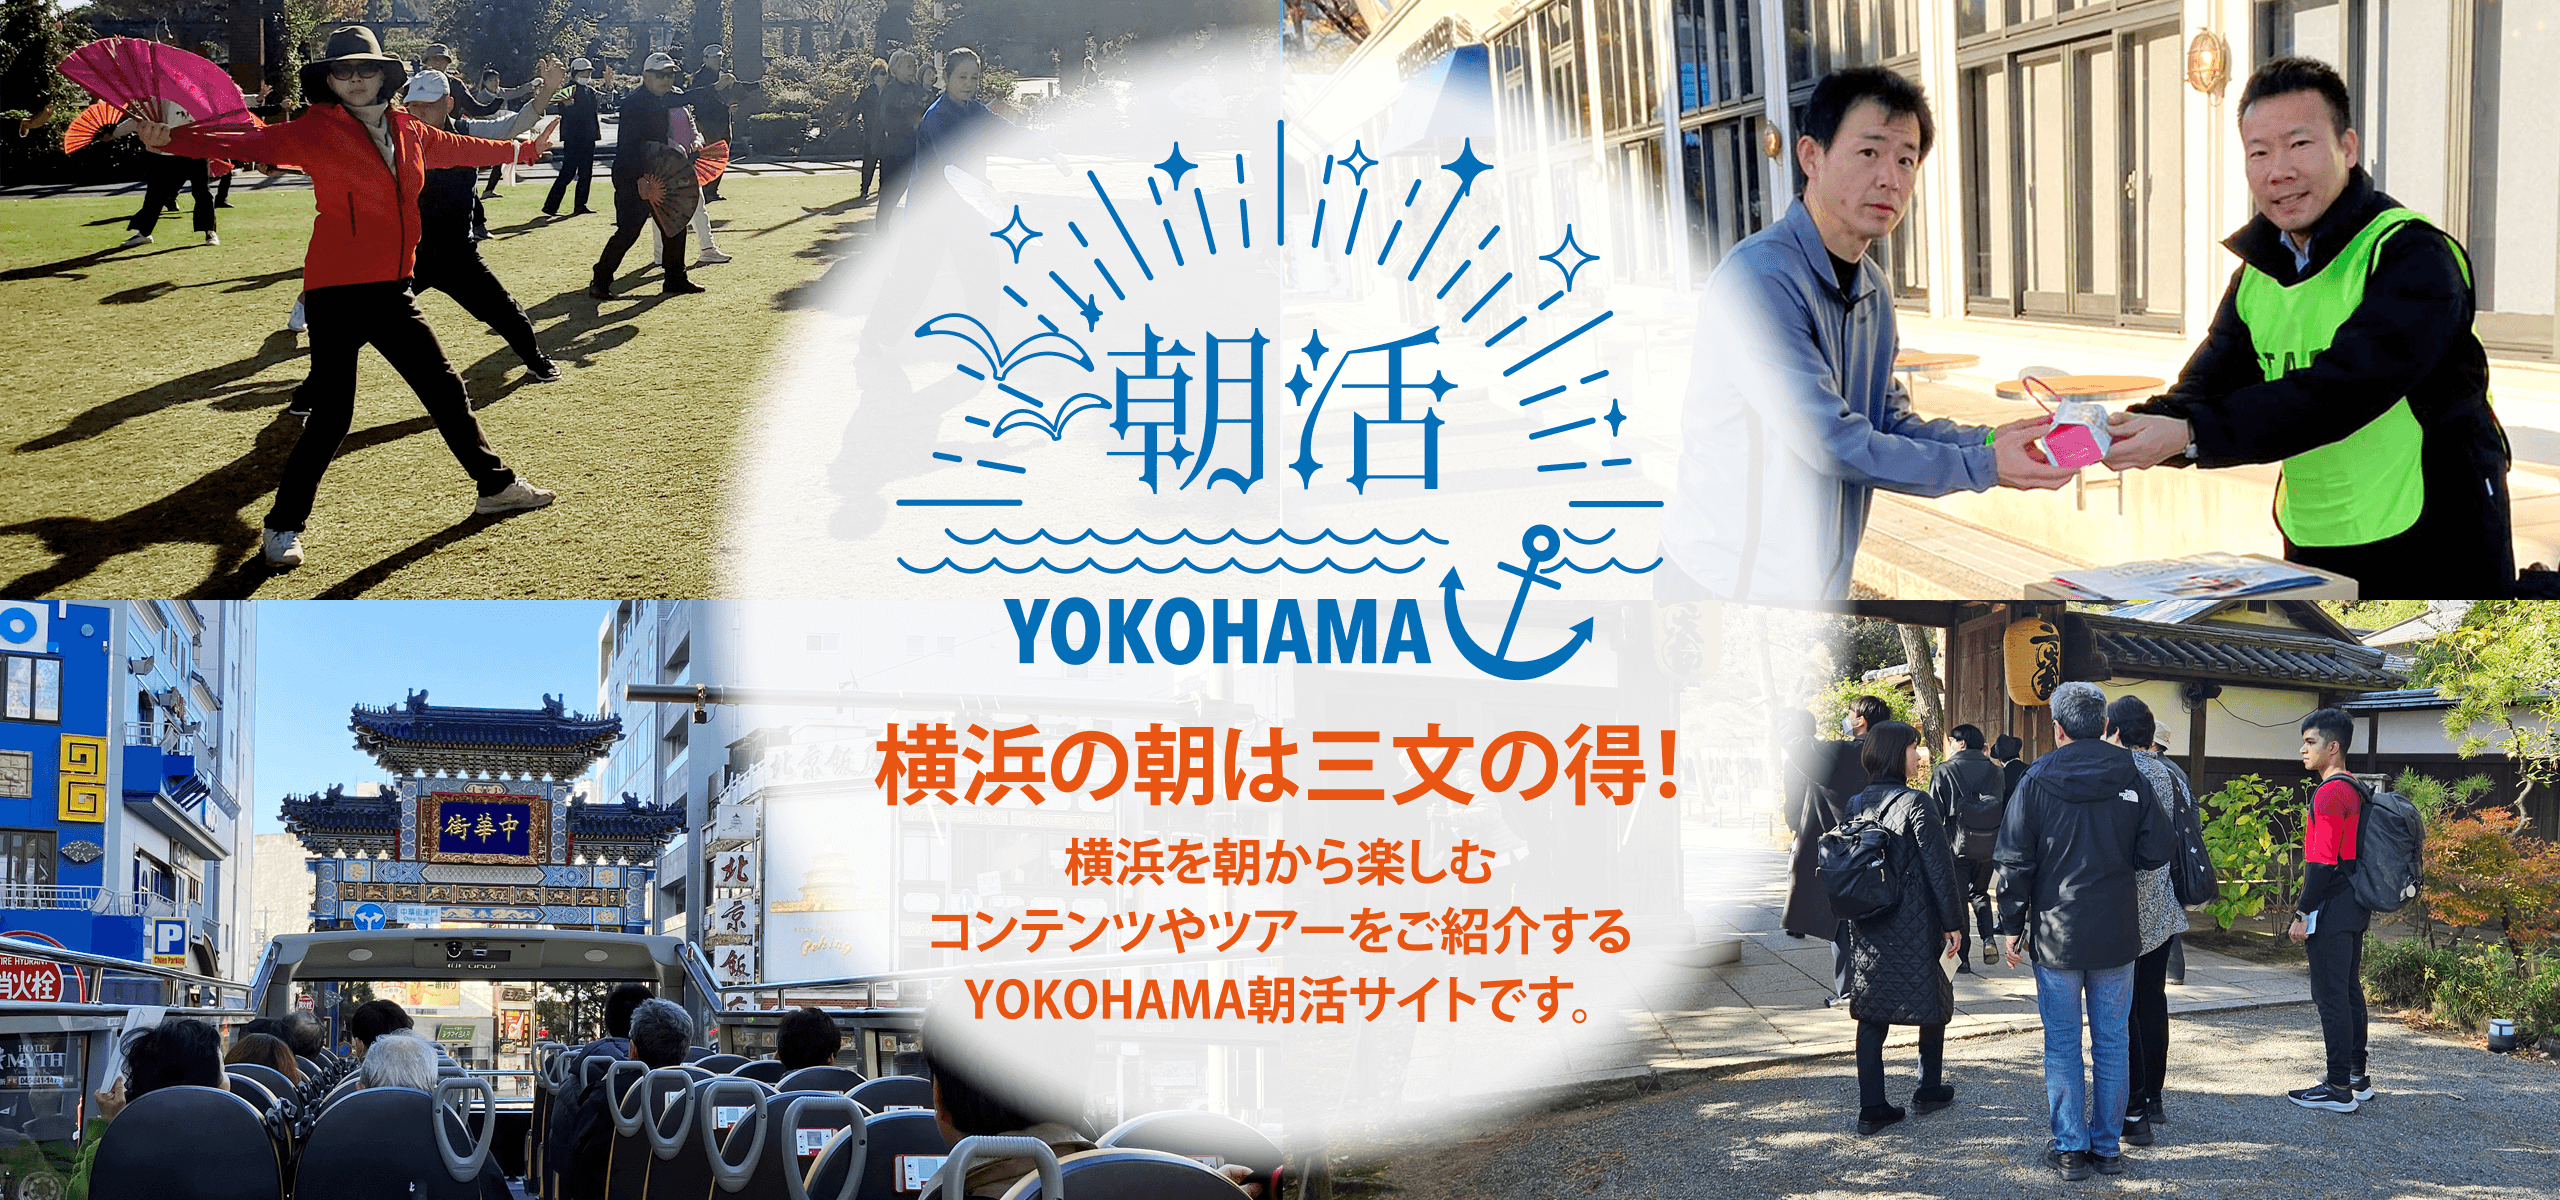 横浜の朝は三文の得！横浜を朝から楽しむコンテンツやツアーをご紹介するYOKOHAMA朝活サイトです。